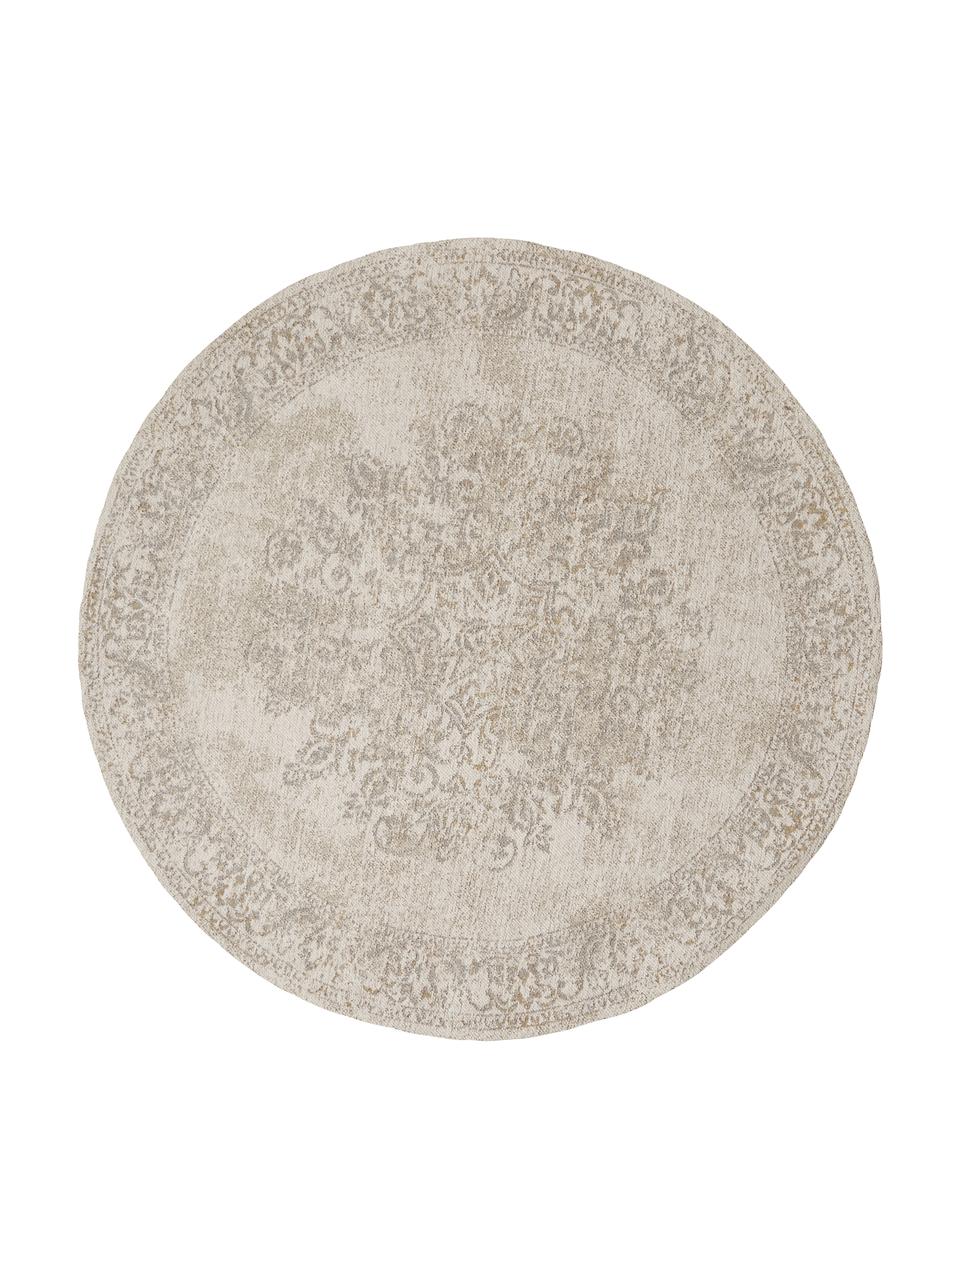 Okrúhly ženilkový koberec vo vintage štýle Nalia, ručne tkaný, Béžová, vzorovaná, Ø 120 cm (veľkosť S)